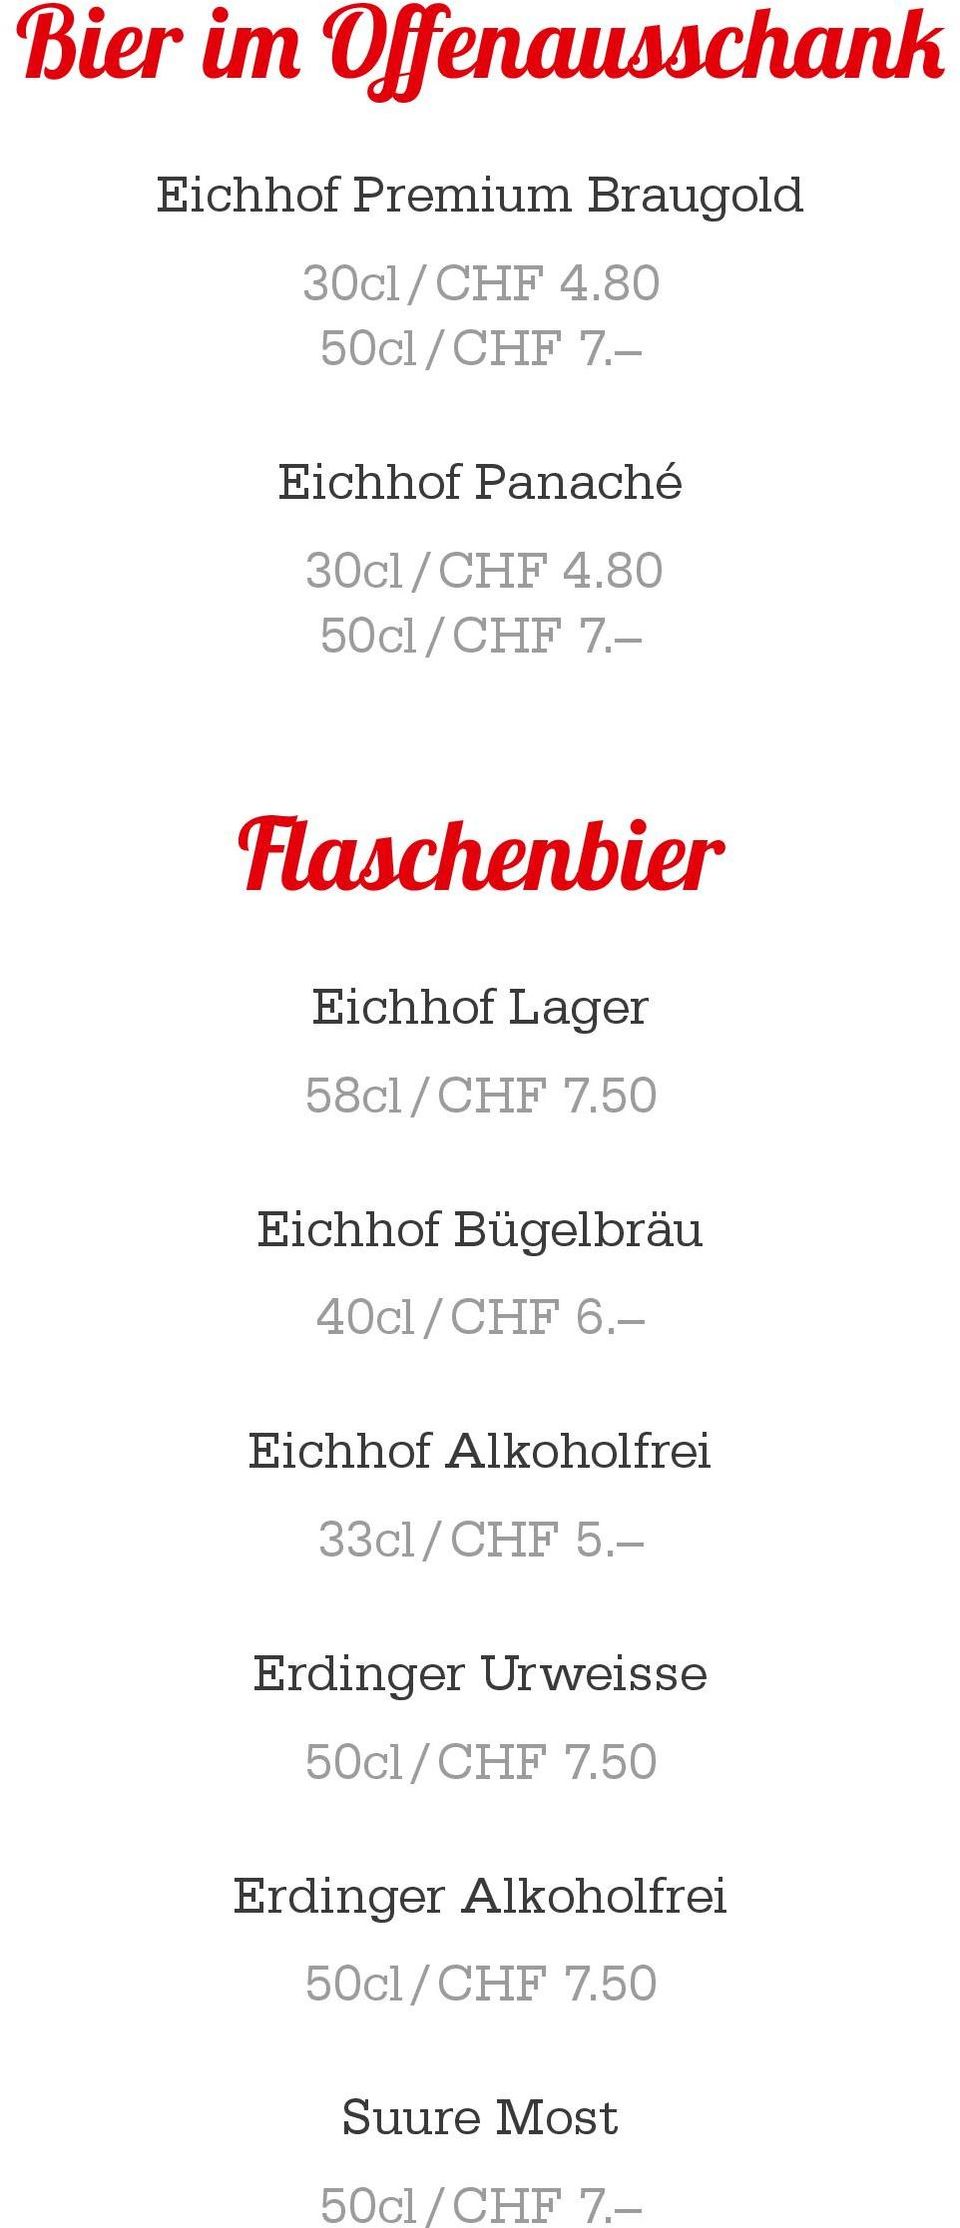 Flaschenbier Eichhof Lager 58cl / CHF 7.50 Eichhof Bügelbräu 40cl / CHF 6.